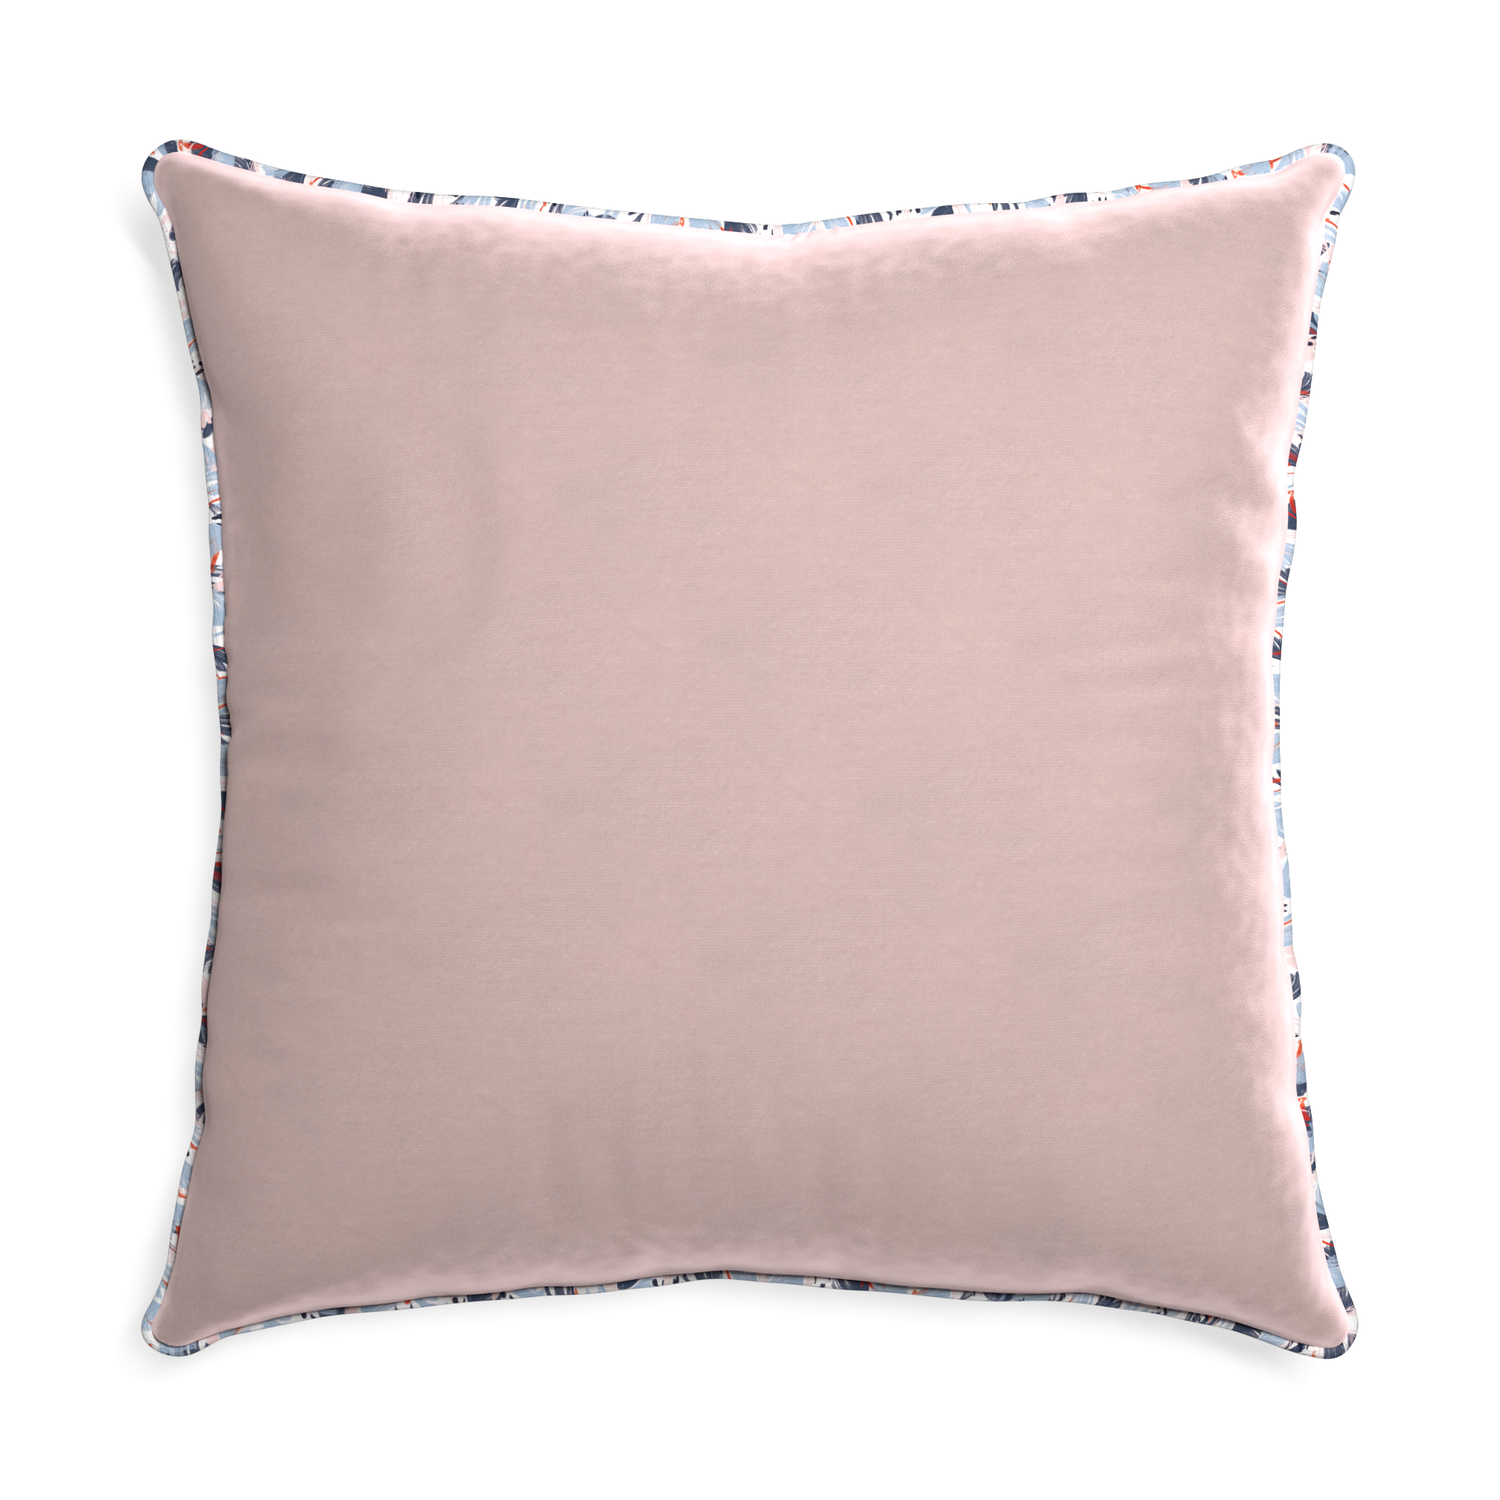 Euro-sham rose velvet custom pillow with e piping on white background